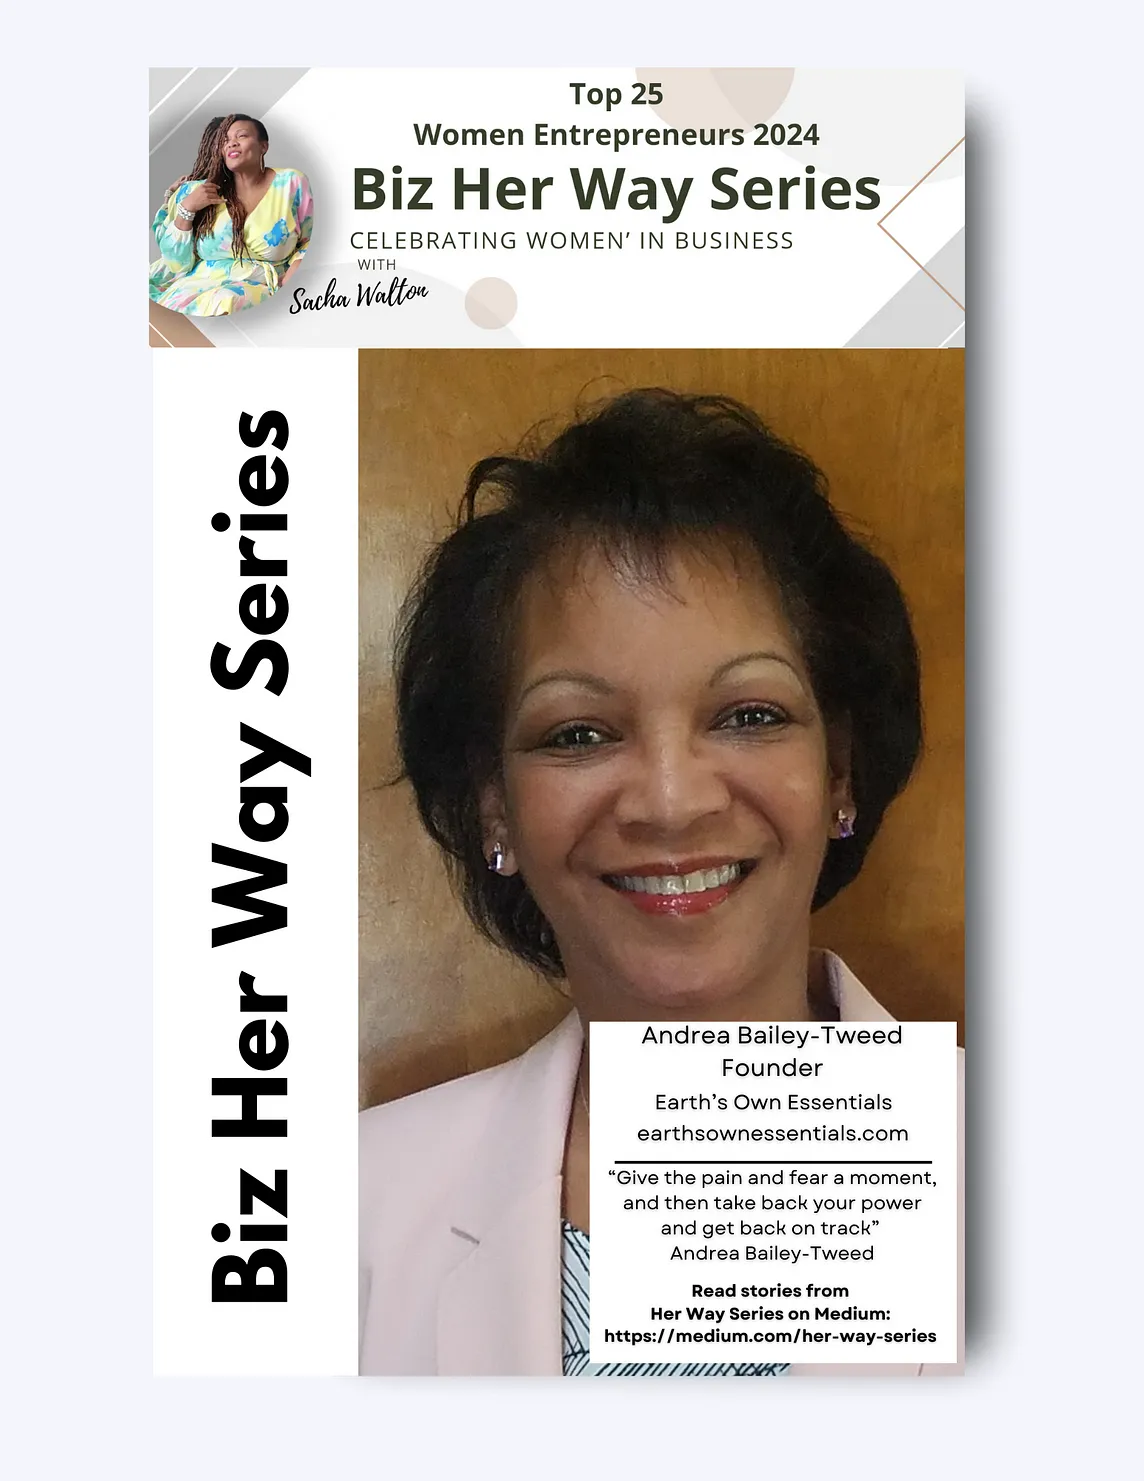 Biz Her Way Series: Meet Andrea Bailey-Tweed